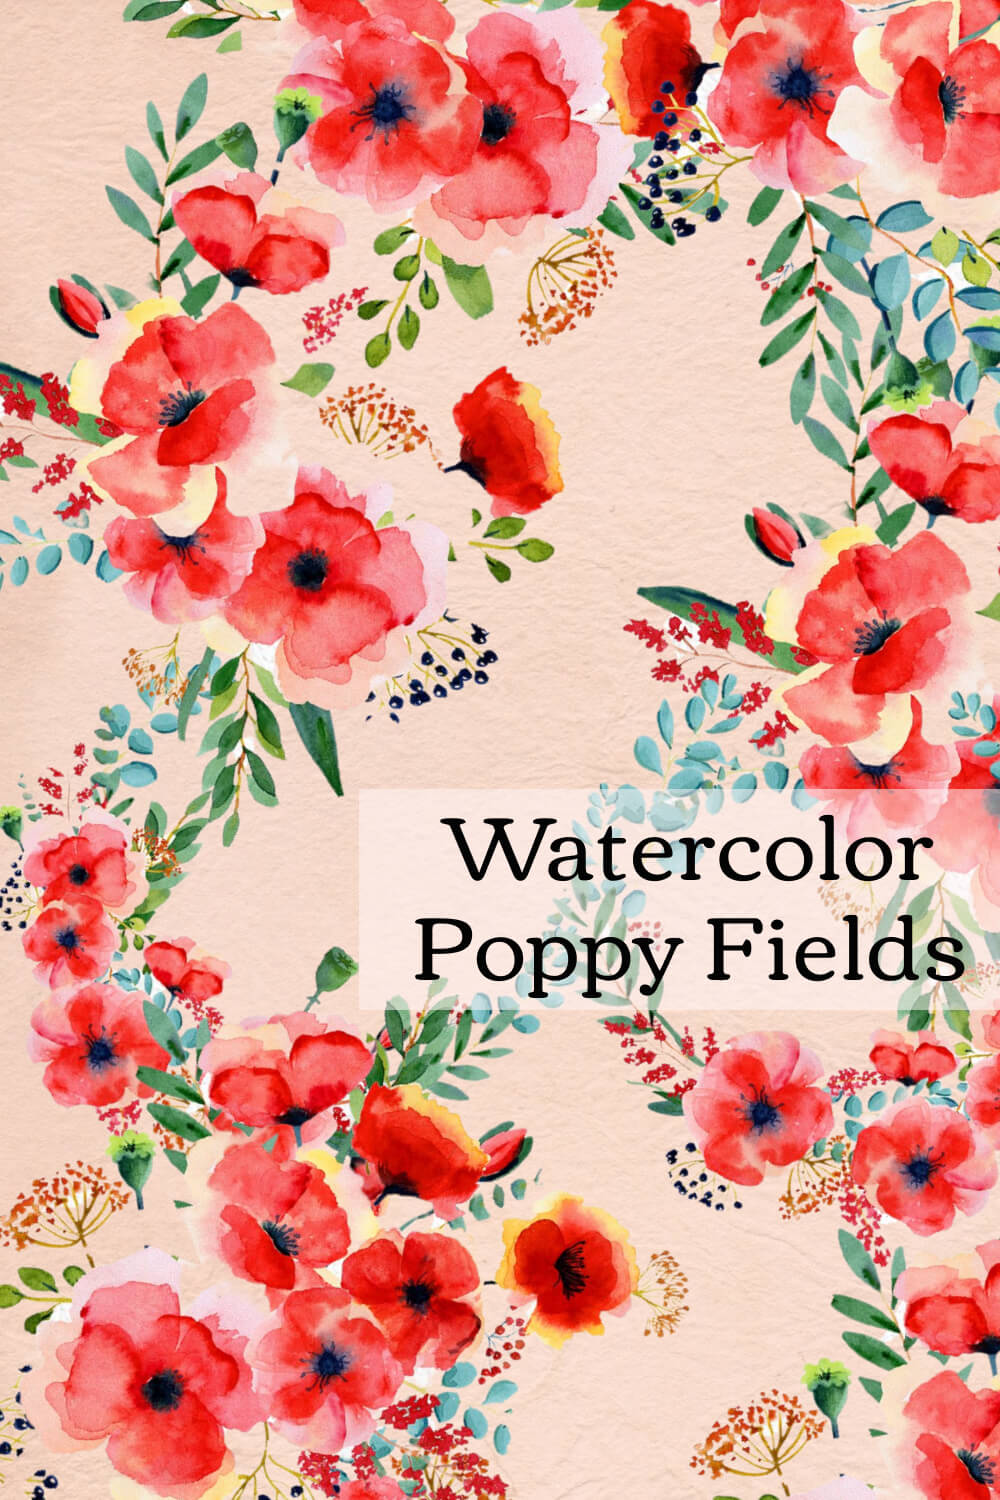 Watercolor Poppy Fields.